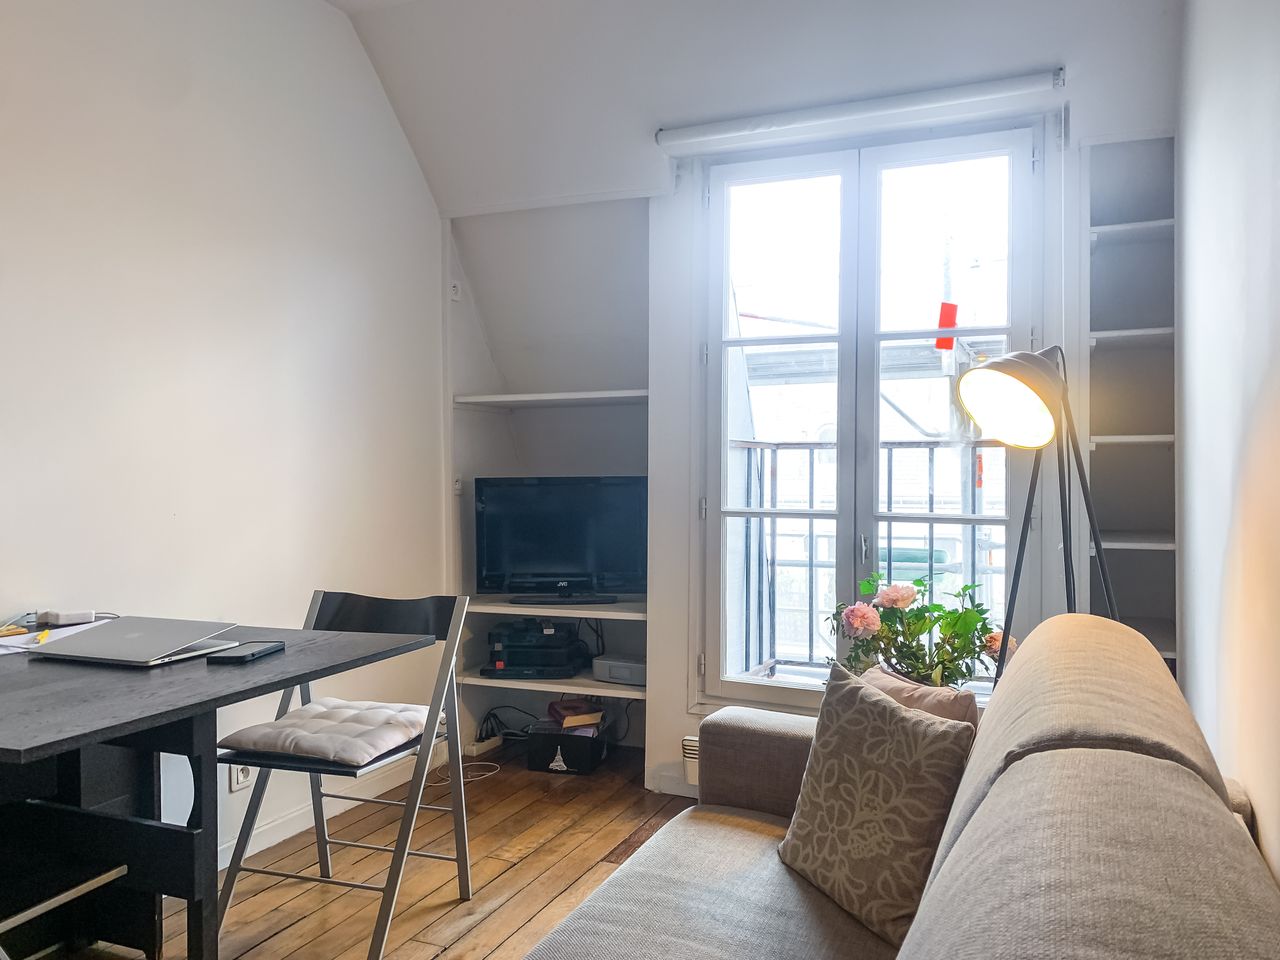 Vienne - cozy 1bdrm apartment